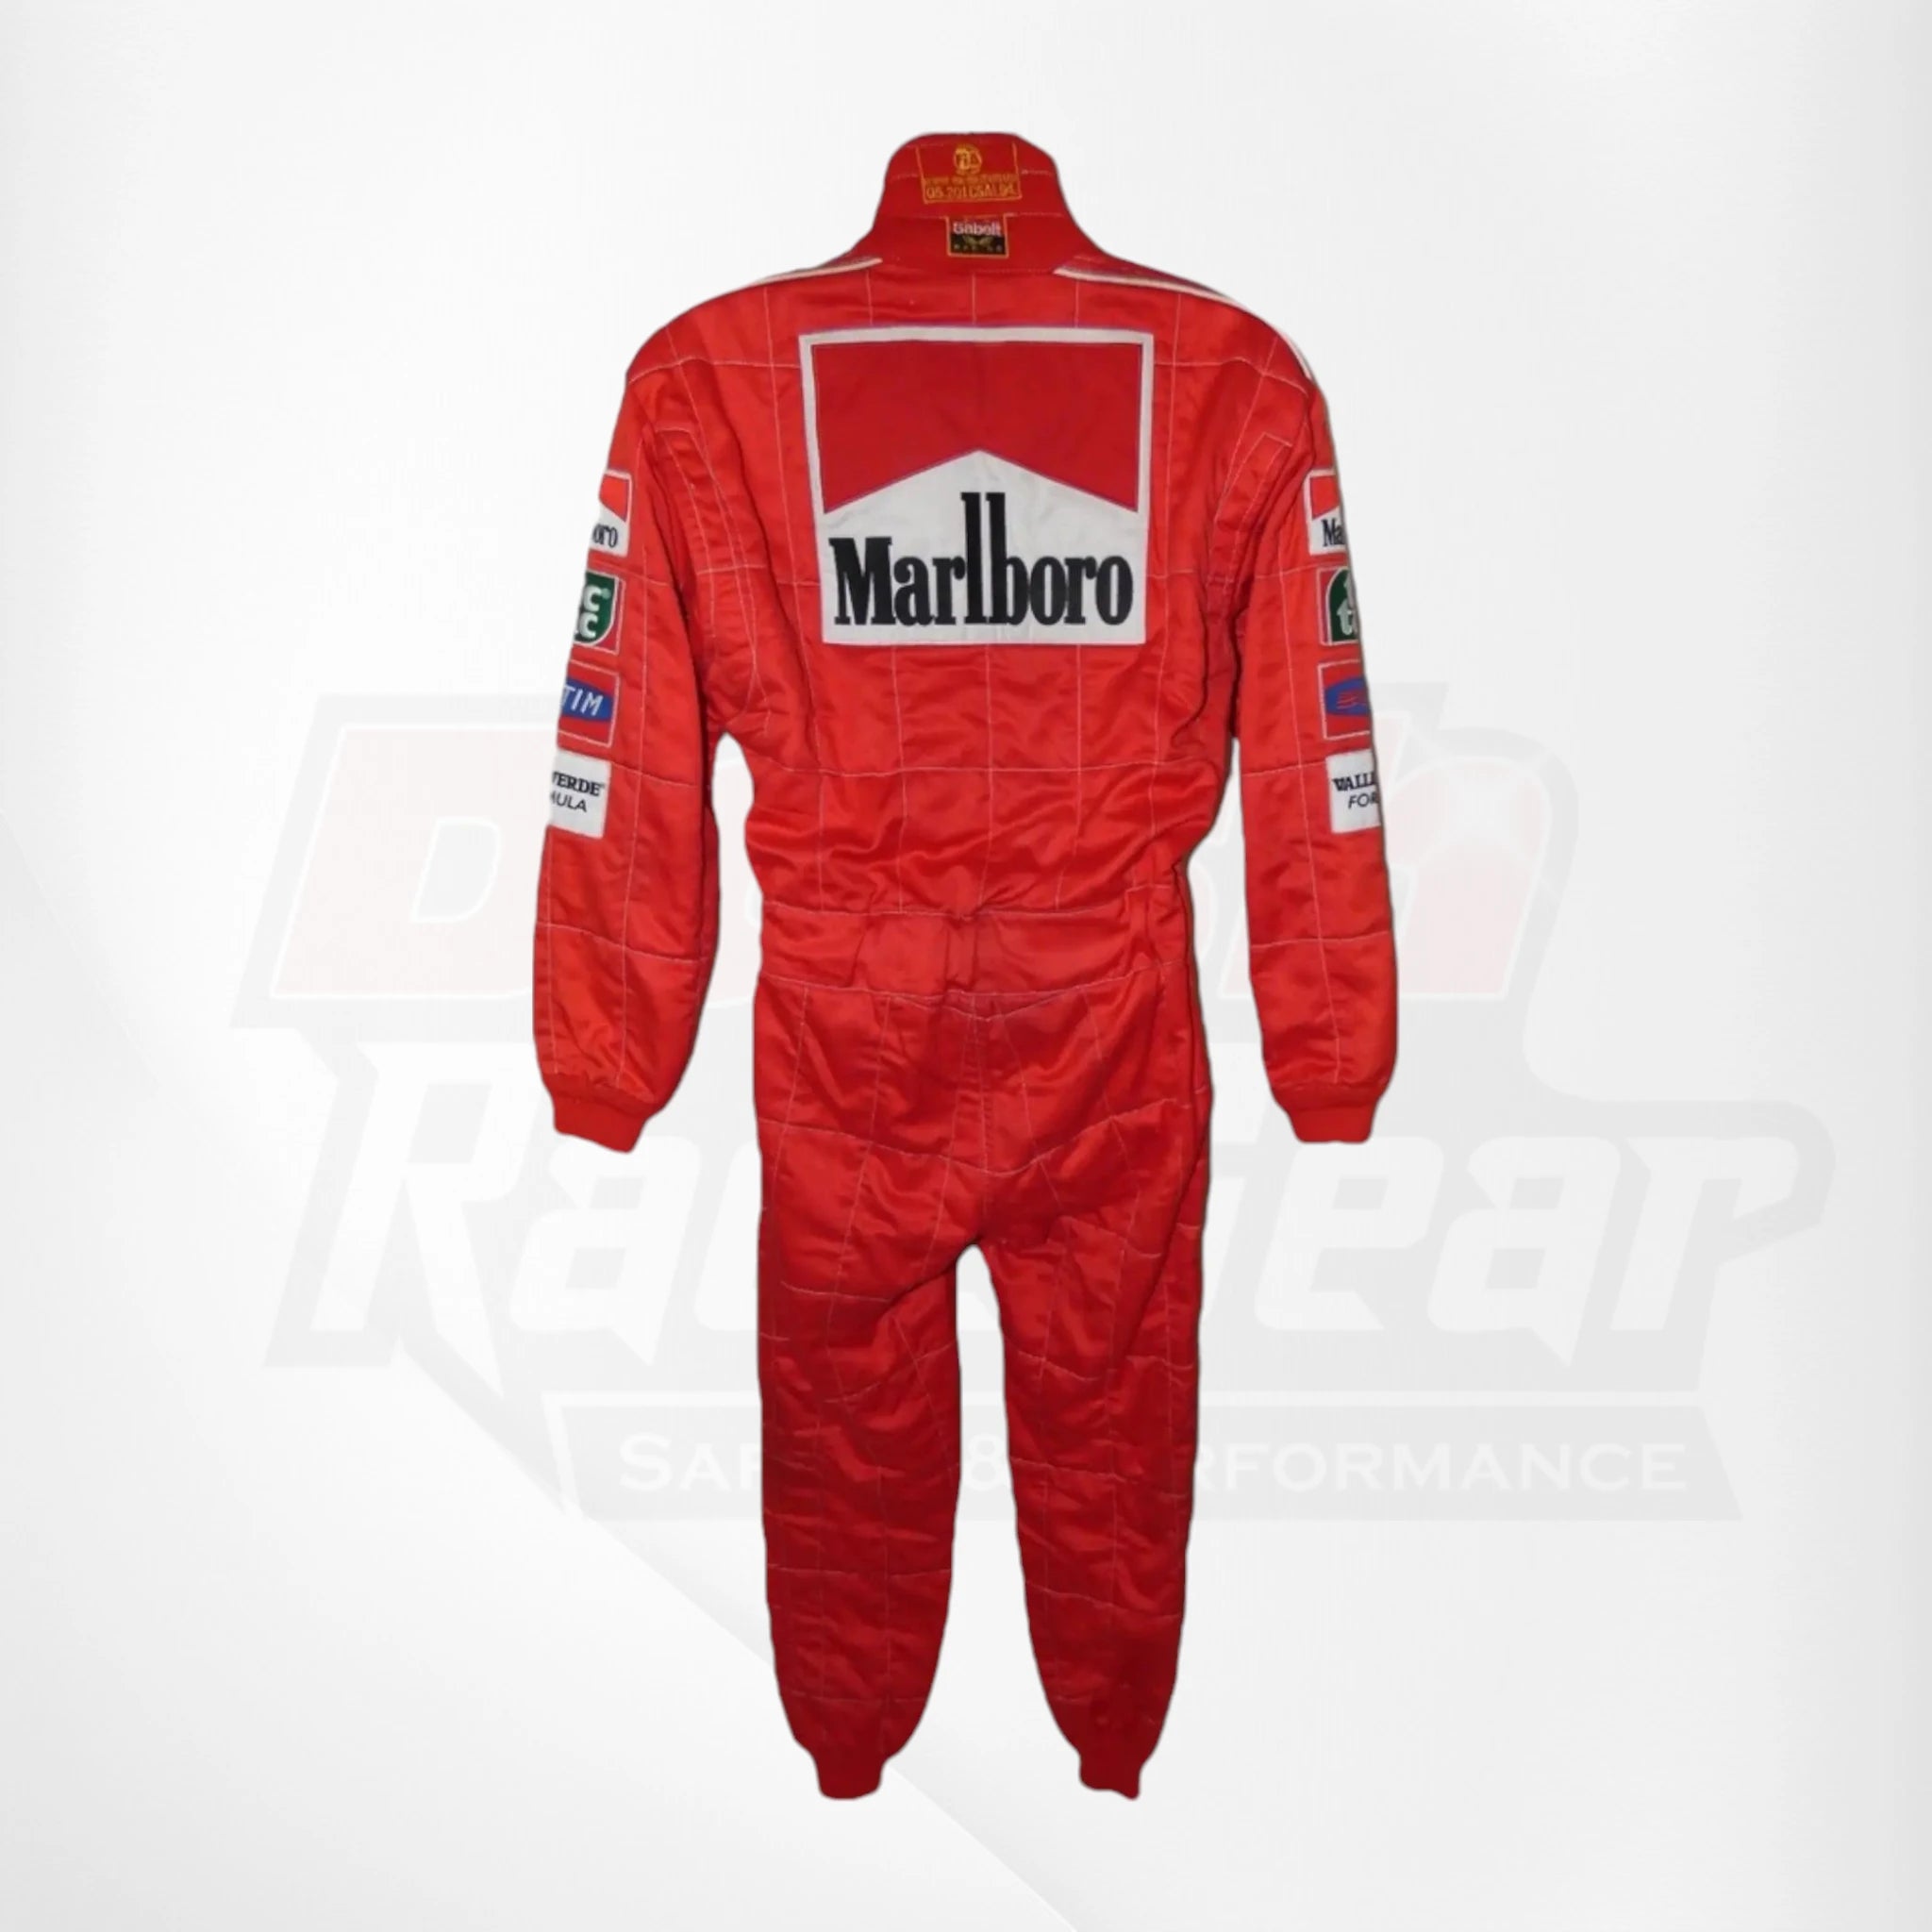 Rubens Barrichello Monaco 2000 GP Ferrari race suit